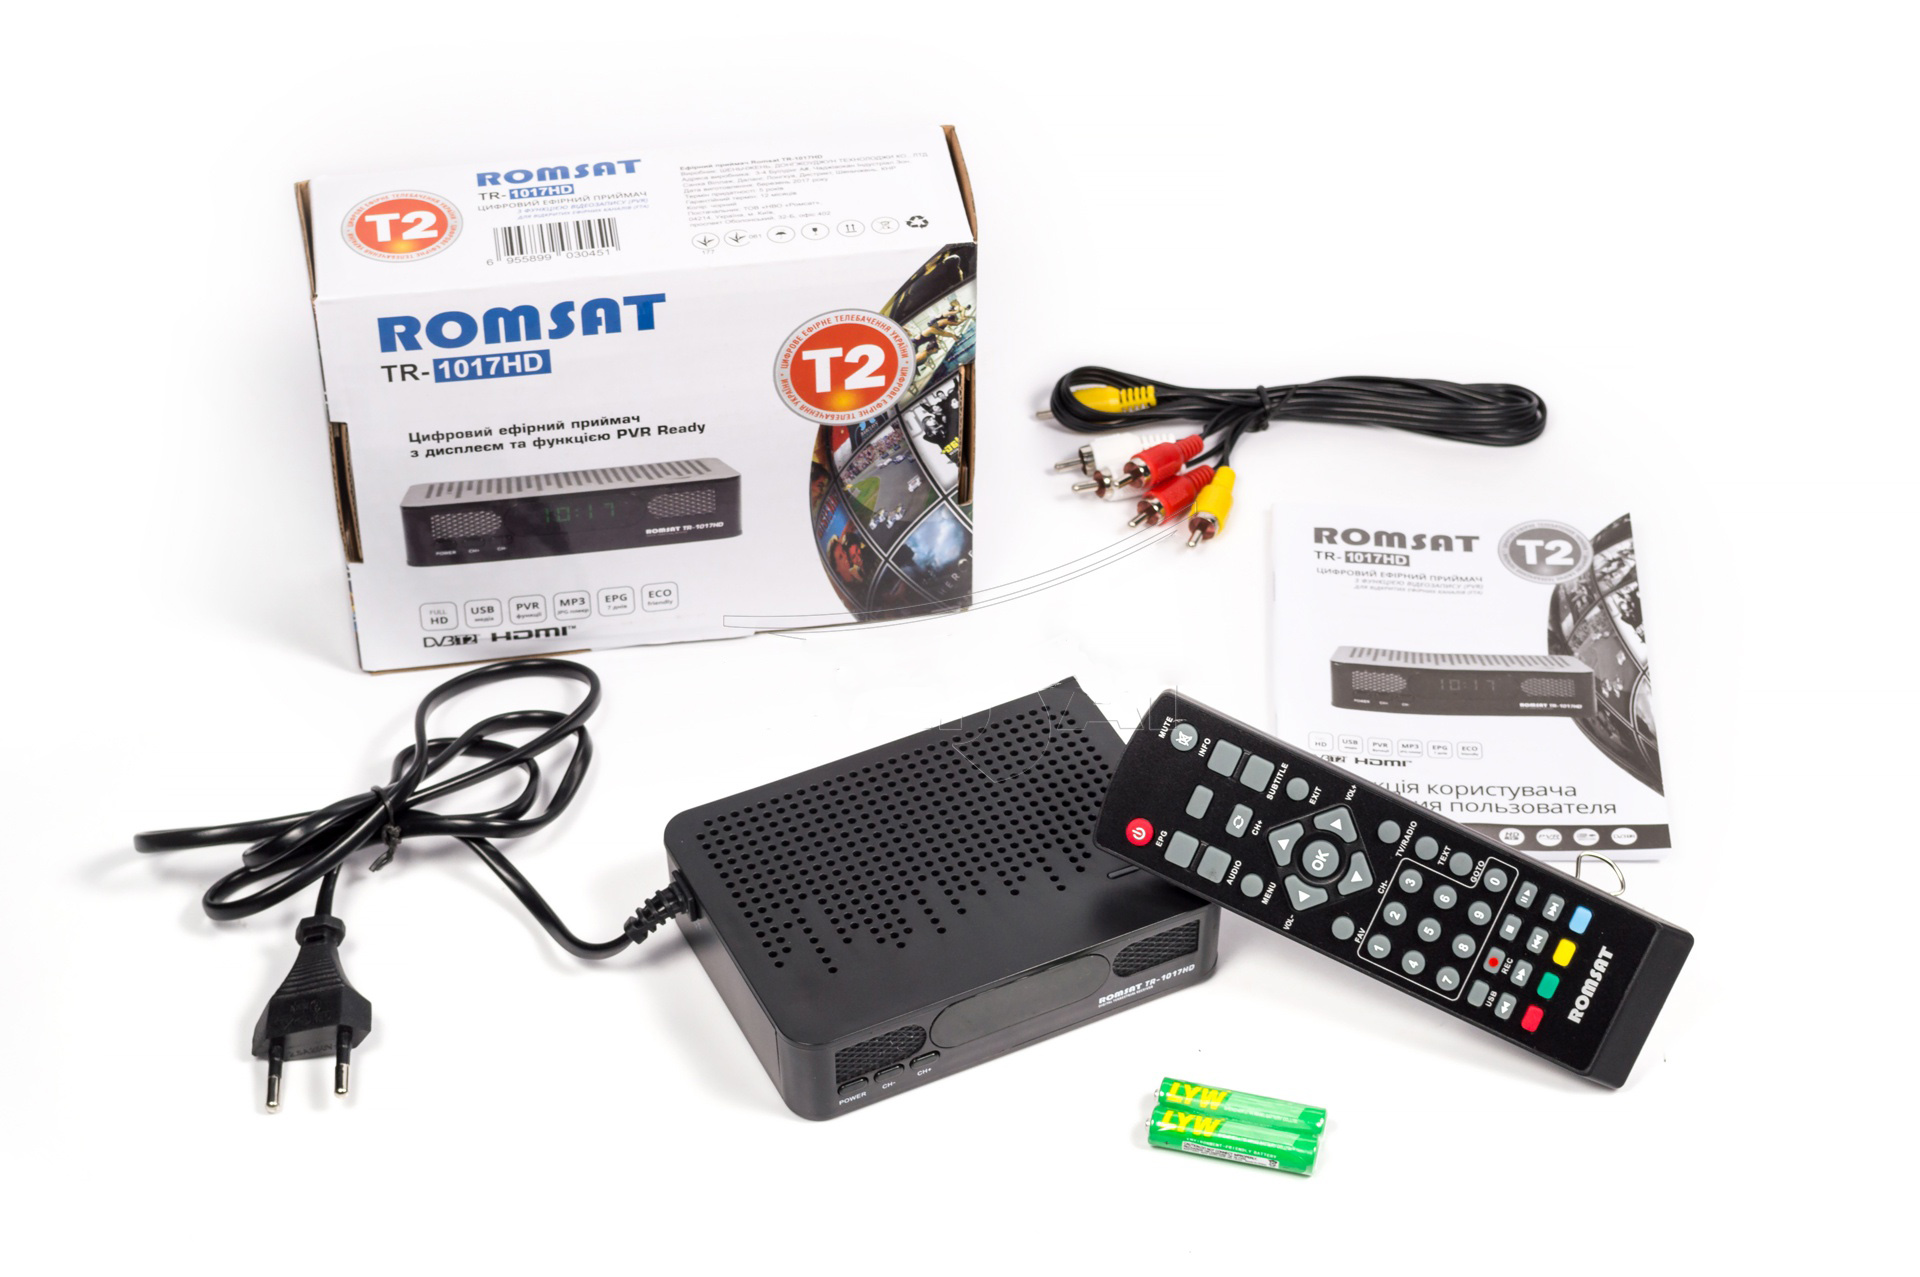 romsat 1017 HD цифровой тюнер т2 купить в днепре